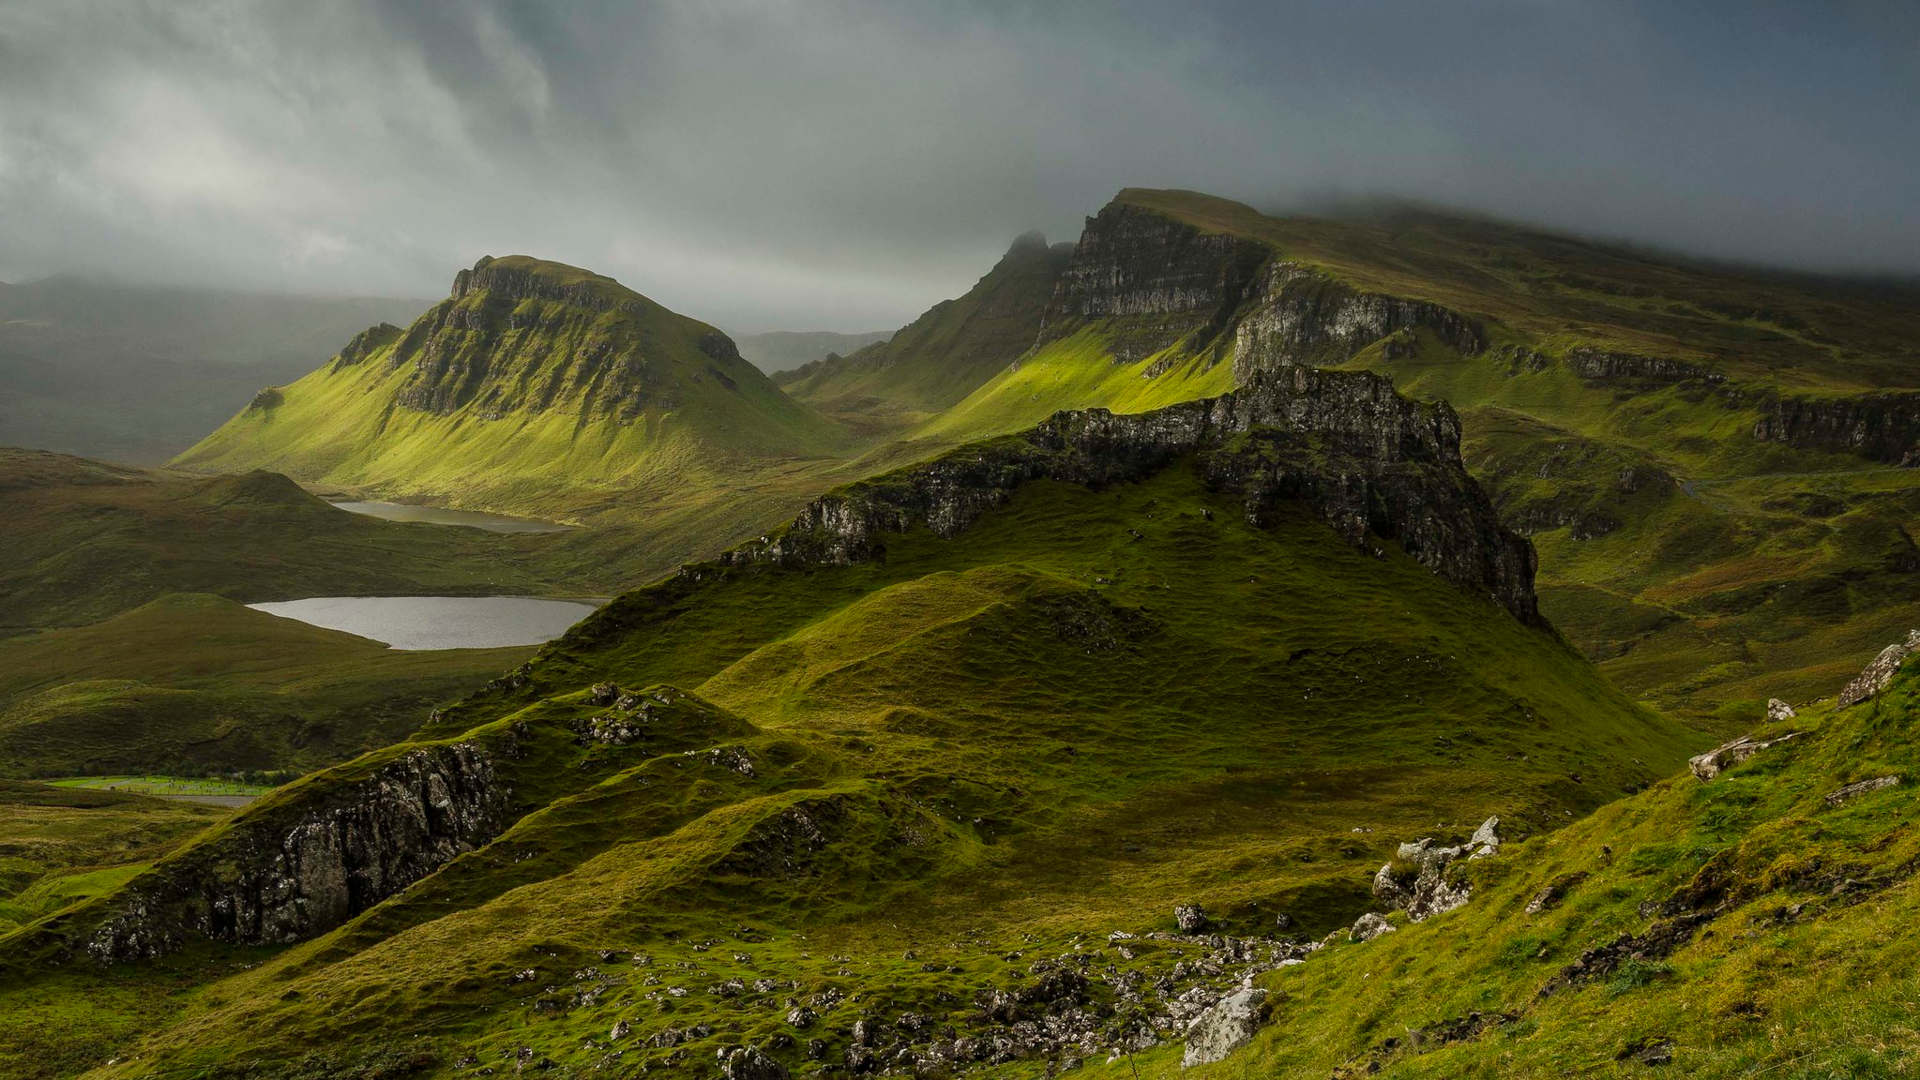 Scotland nature reserves. Остров Скай внутренние Гебриды. Троттерниш Шотландия. Остров Скай, Шотландия (Isle of Skye). Гебридские острова Шотландия.